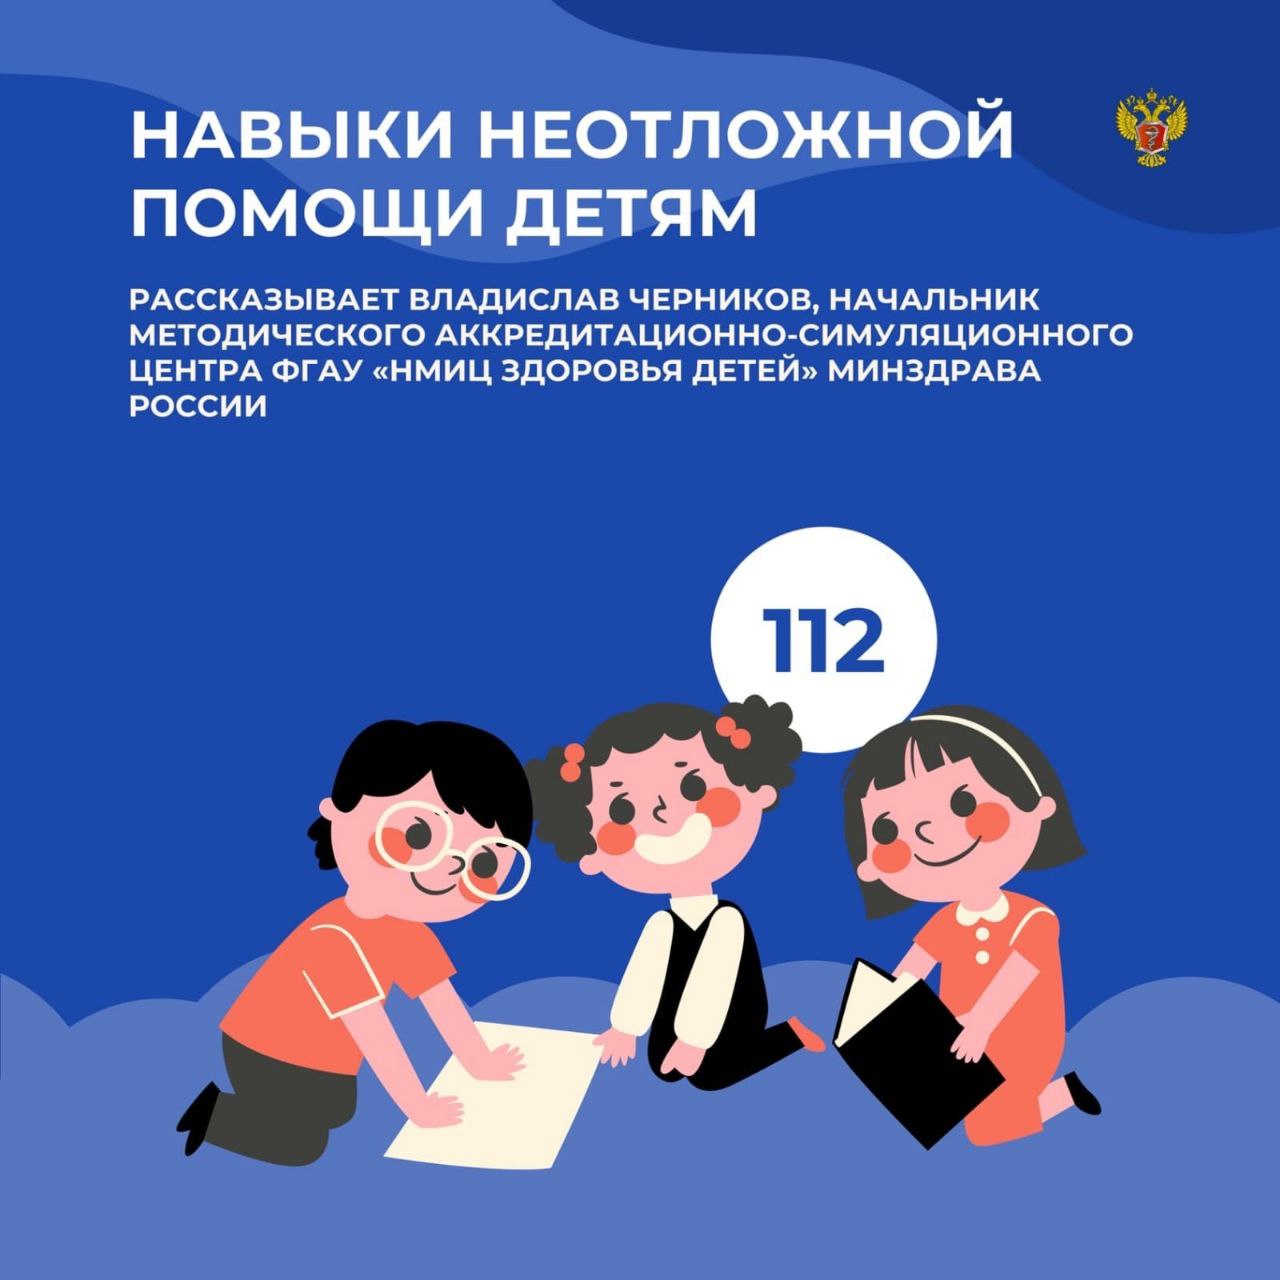 3 по 9 июня в Ульяновской области проводится тематическая неделя сохранения здоровья детей..